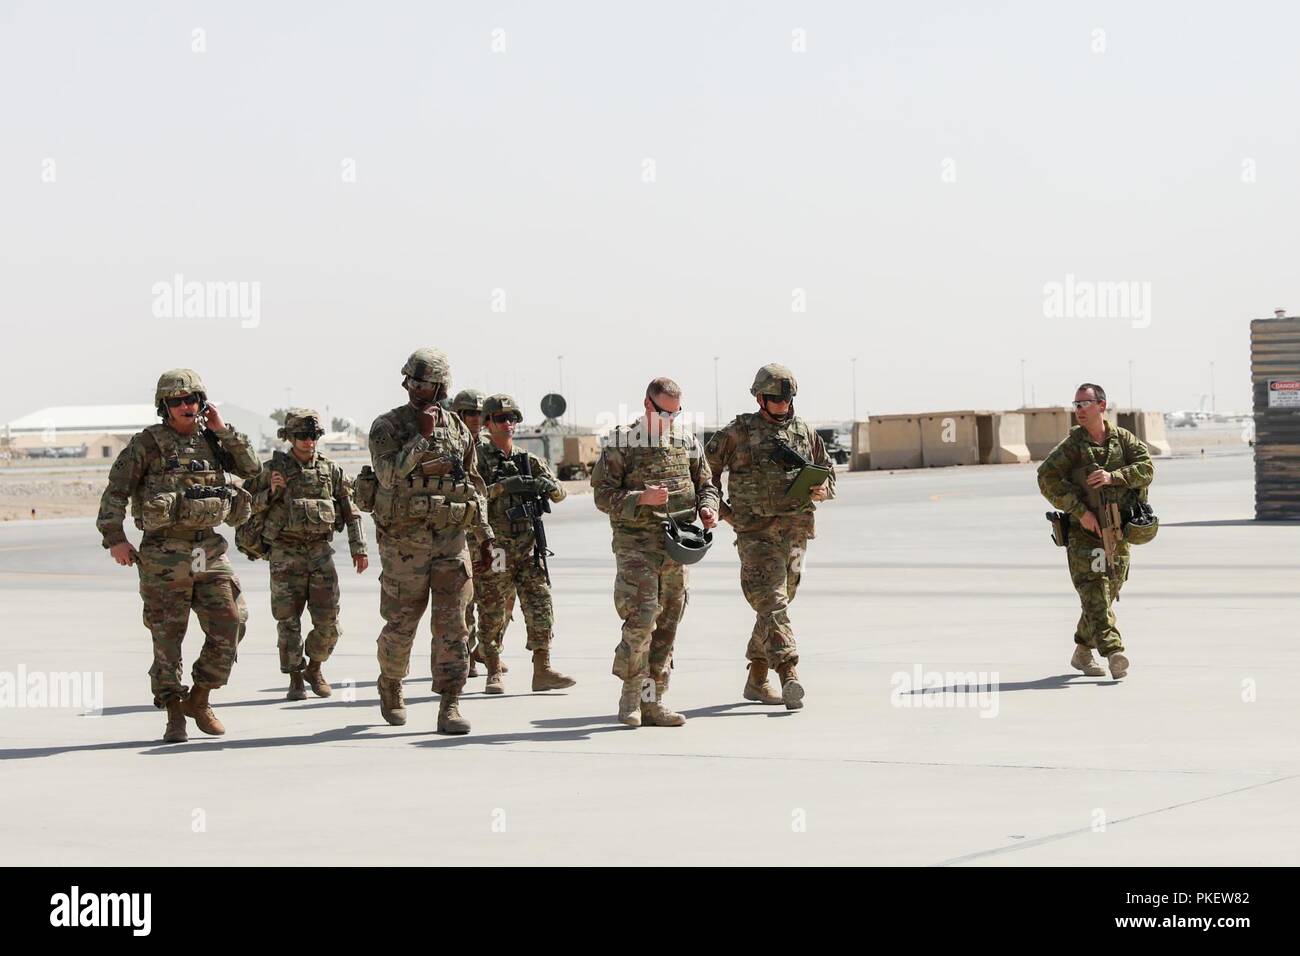 L'AÉRODROME DE KANDAHAR, Afghanistan (1 août 2018) -- U.S. Army Command Sgt. Le major William F. Thetford, le Commandement central américain enrôlé senior leader, est accueilli par le train, d'aider et de conseiller senior Command-South s'enrôle chef de l'aérodrome de Kandahar, en Afghanistan, le 1 août 2018, lors de sa visite à l'aérodrome. Thetford engagé avec les dirigeants de former, conseiller et assister les Command-South, l'équipe de combat de la 2e Brigade d'infanterie, 4e Division d'infanterie, 451e Escadre expéditionnaire de la Force de sécurité, 1re Brigade d'aide, Groupe de travail Panther, l'OTAN L'Unité médicale multinationale de rôle III et d'autres unités. Banque D'Images